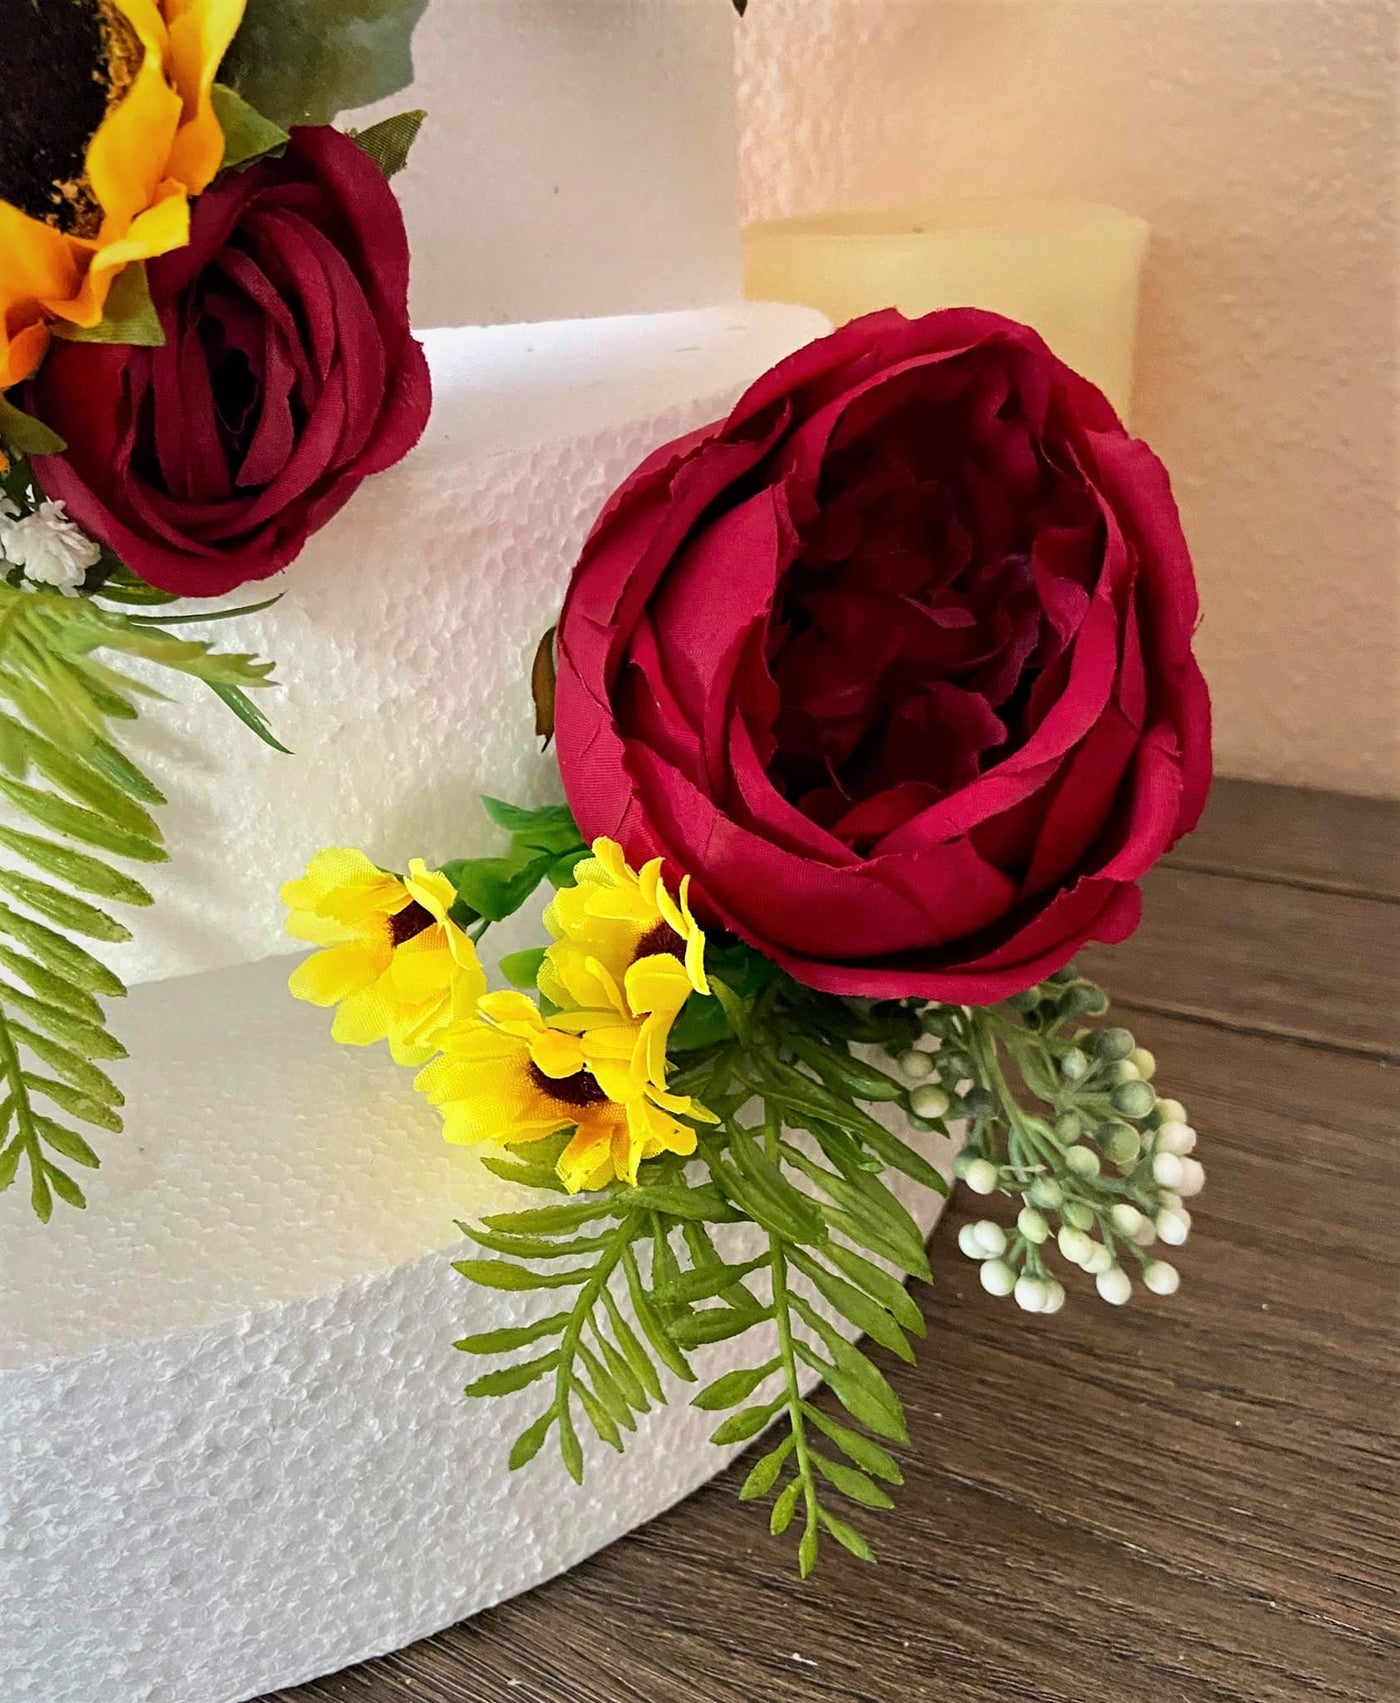 Amanda Cake Flowers Arrangements